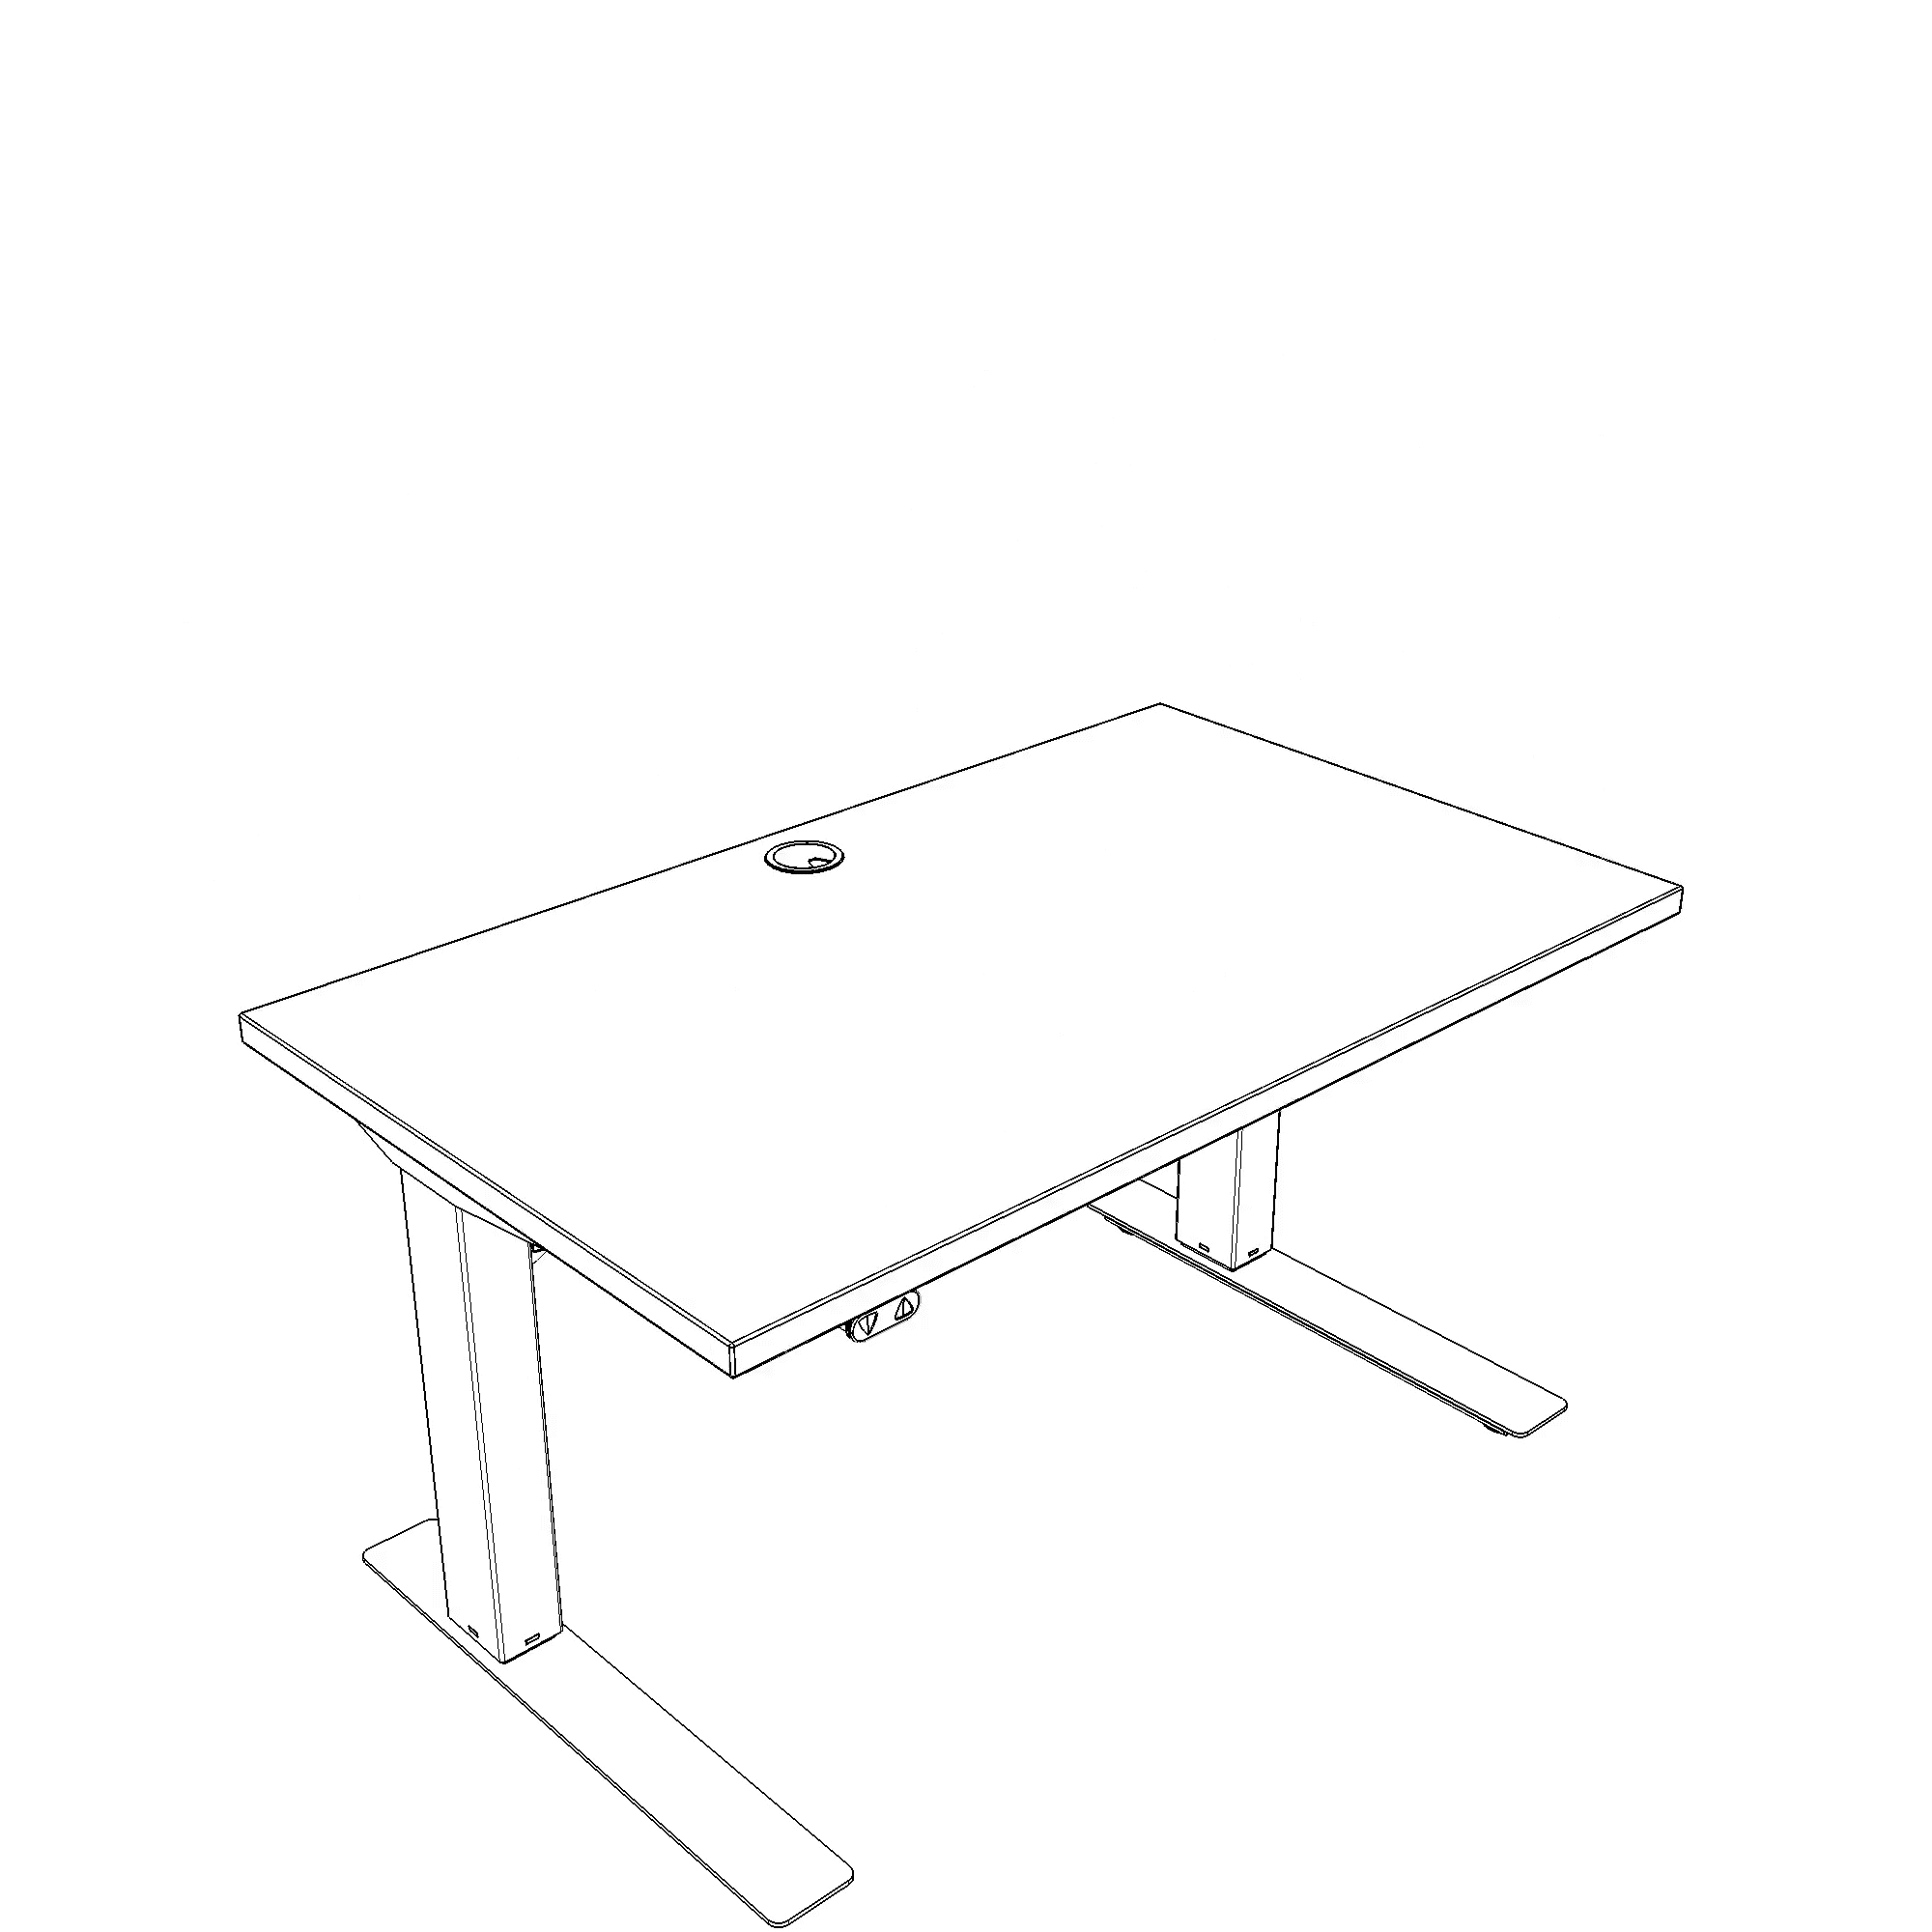 Schreibtisch steh/sitz | 100x60 cm | Buche mit silbernem Gestell